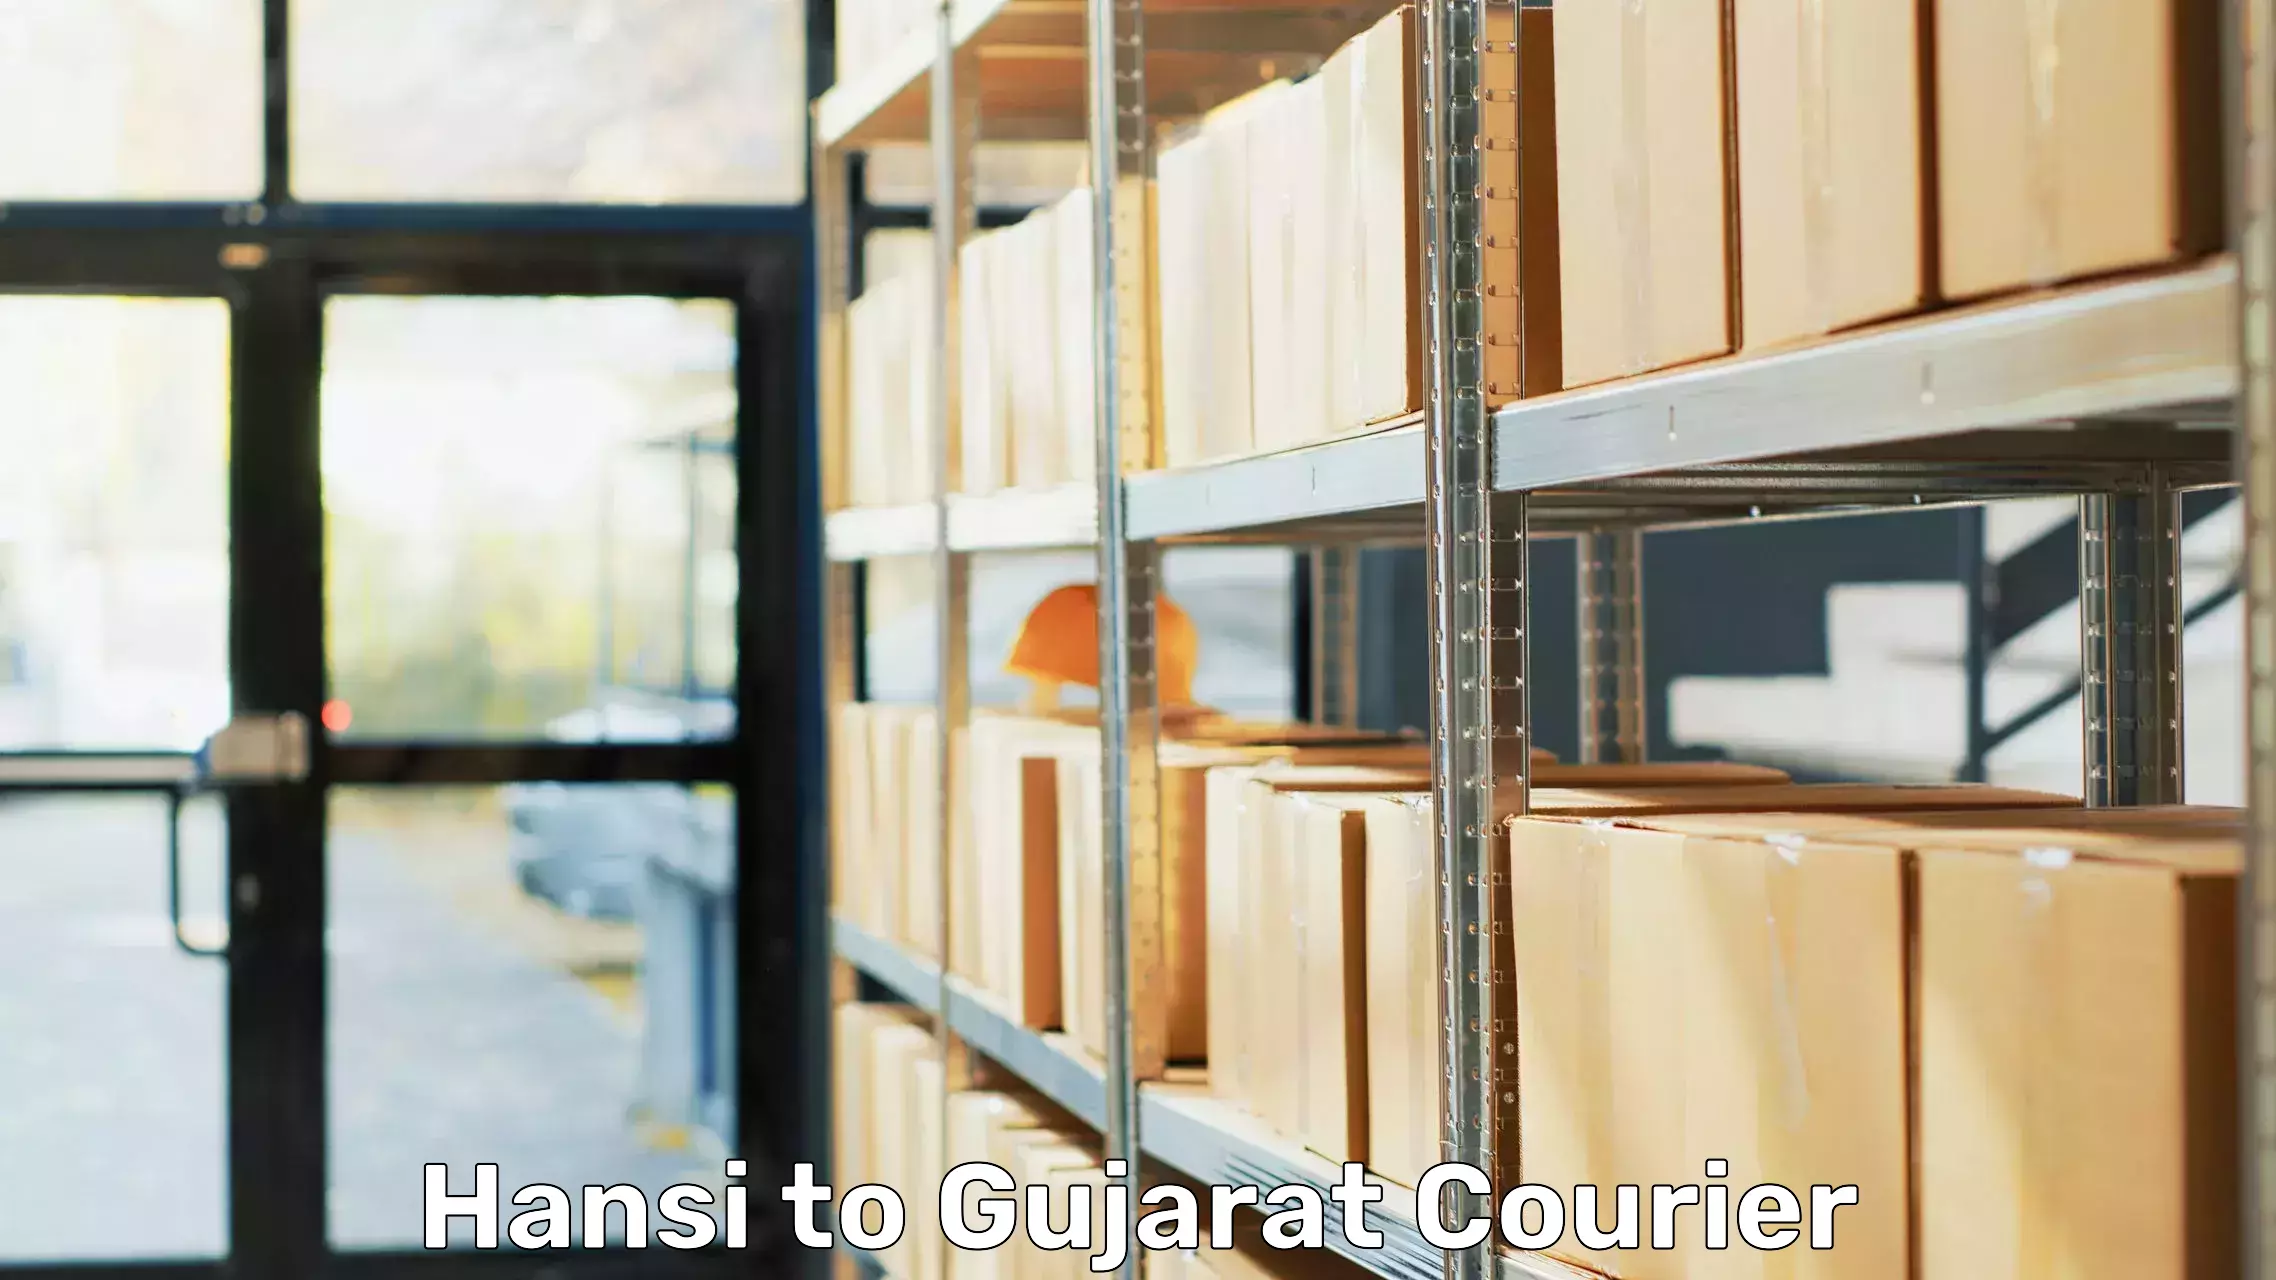 Furniture moving experts Hansi to Gujarat